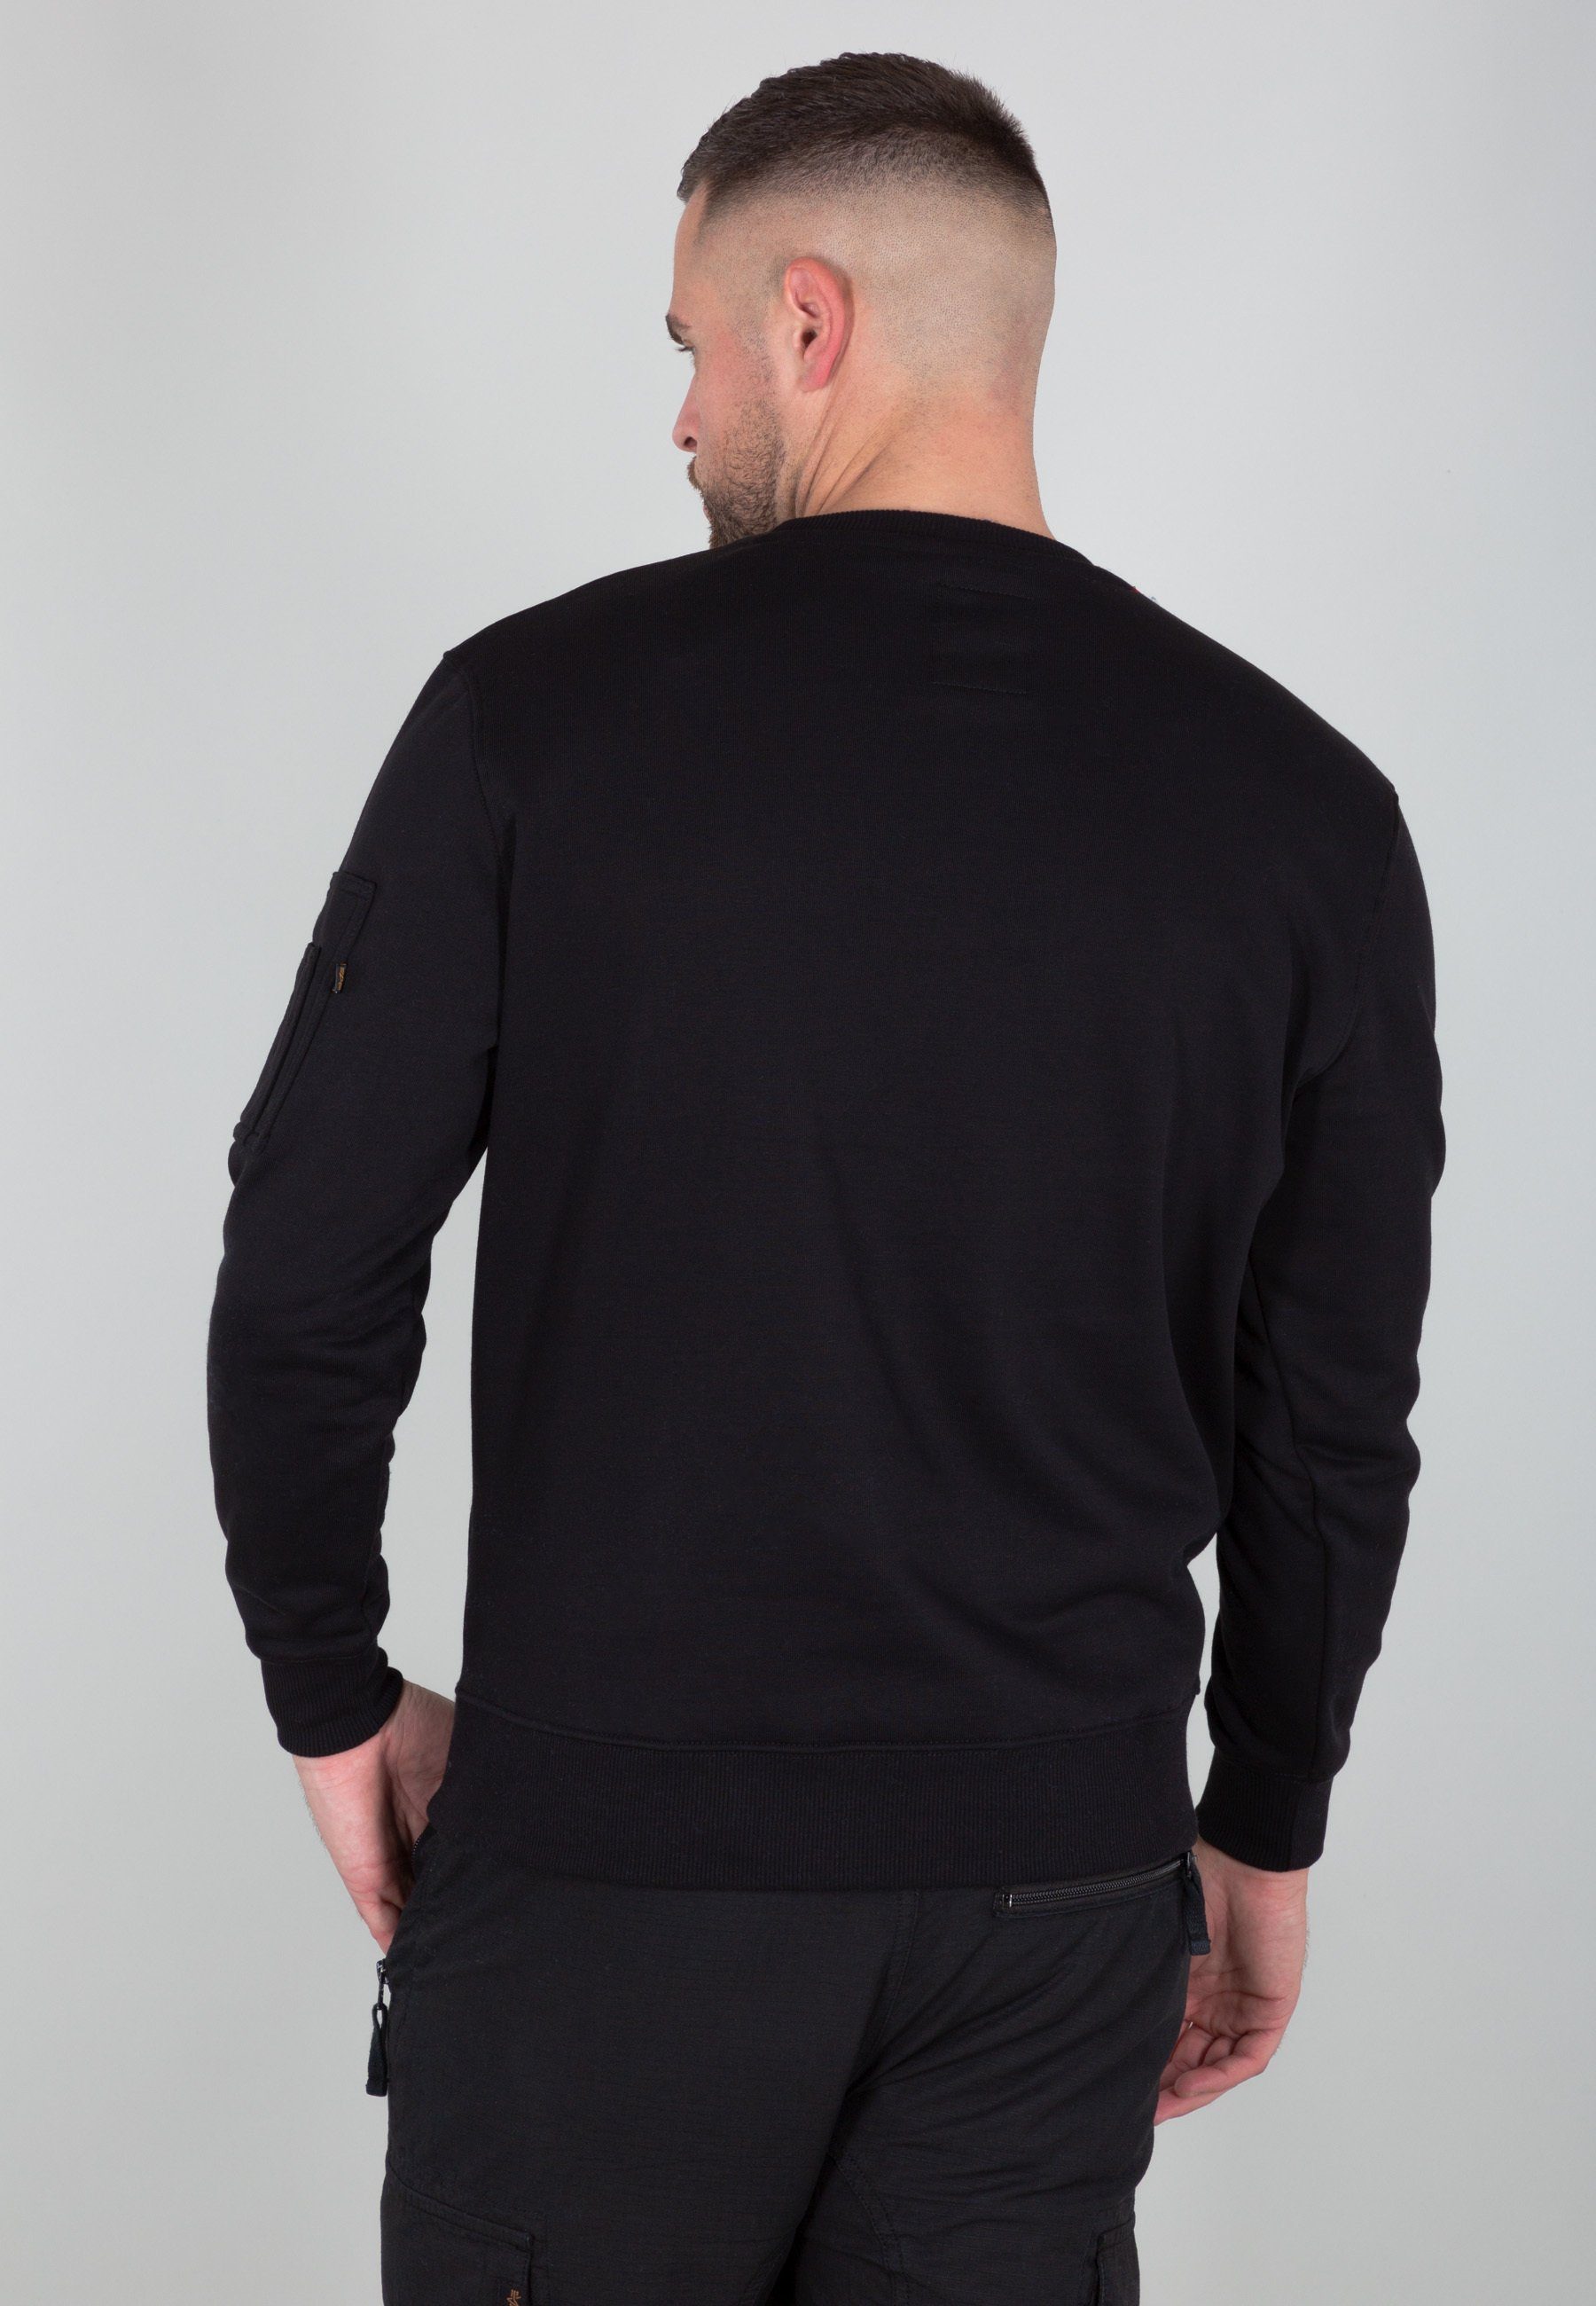 NASA Industries Reflective Sweatshirts Alpha black/refl.oran Alpha - Sweater Sweater Men Industries